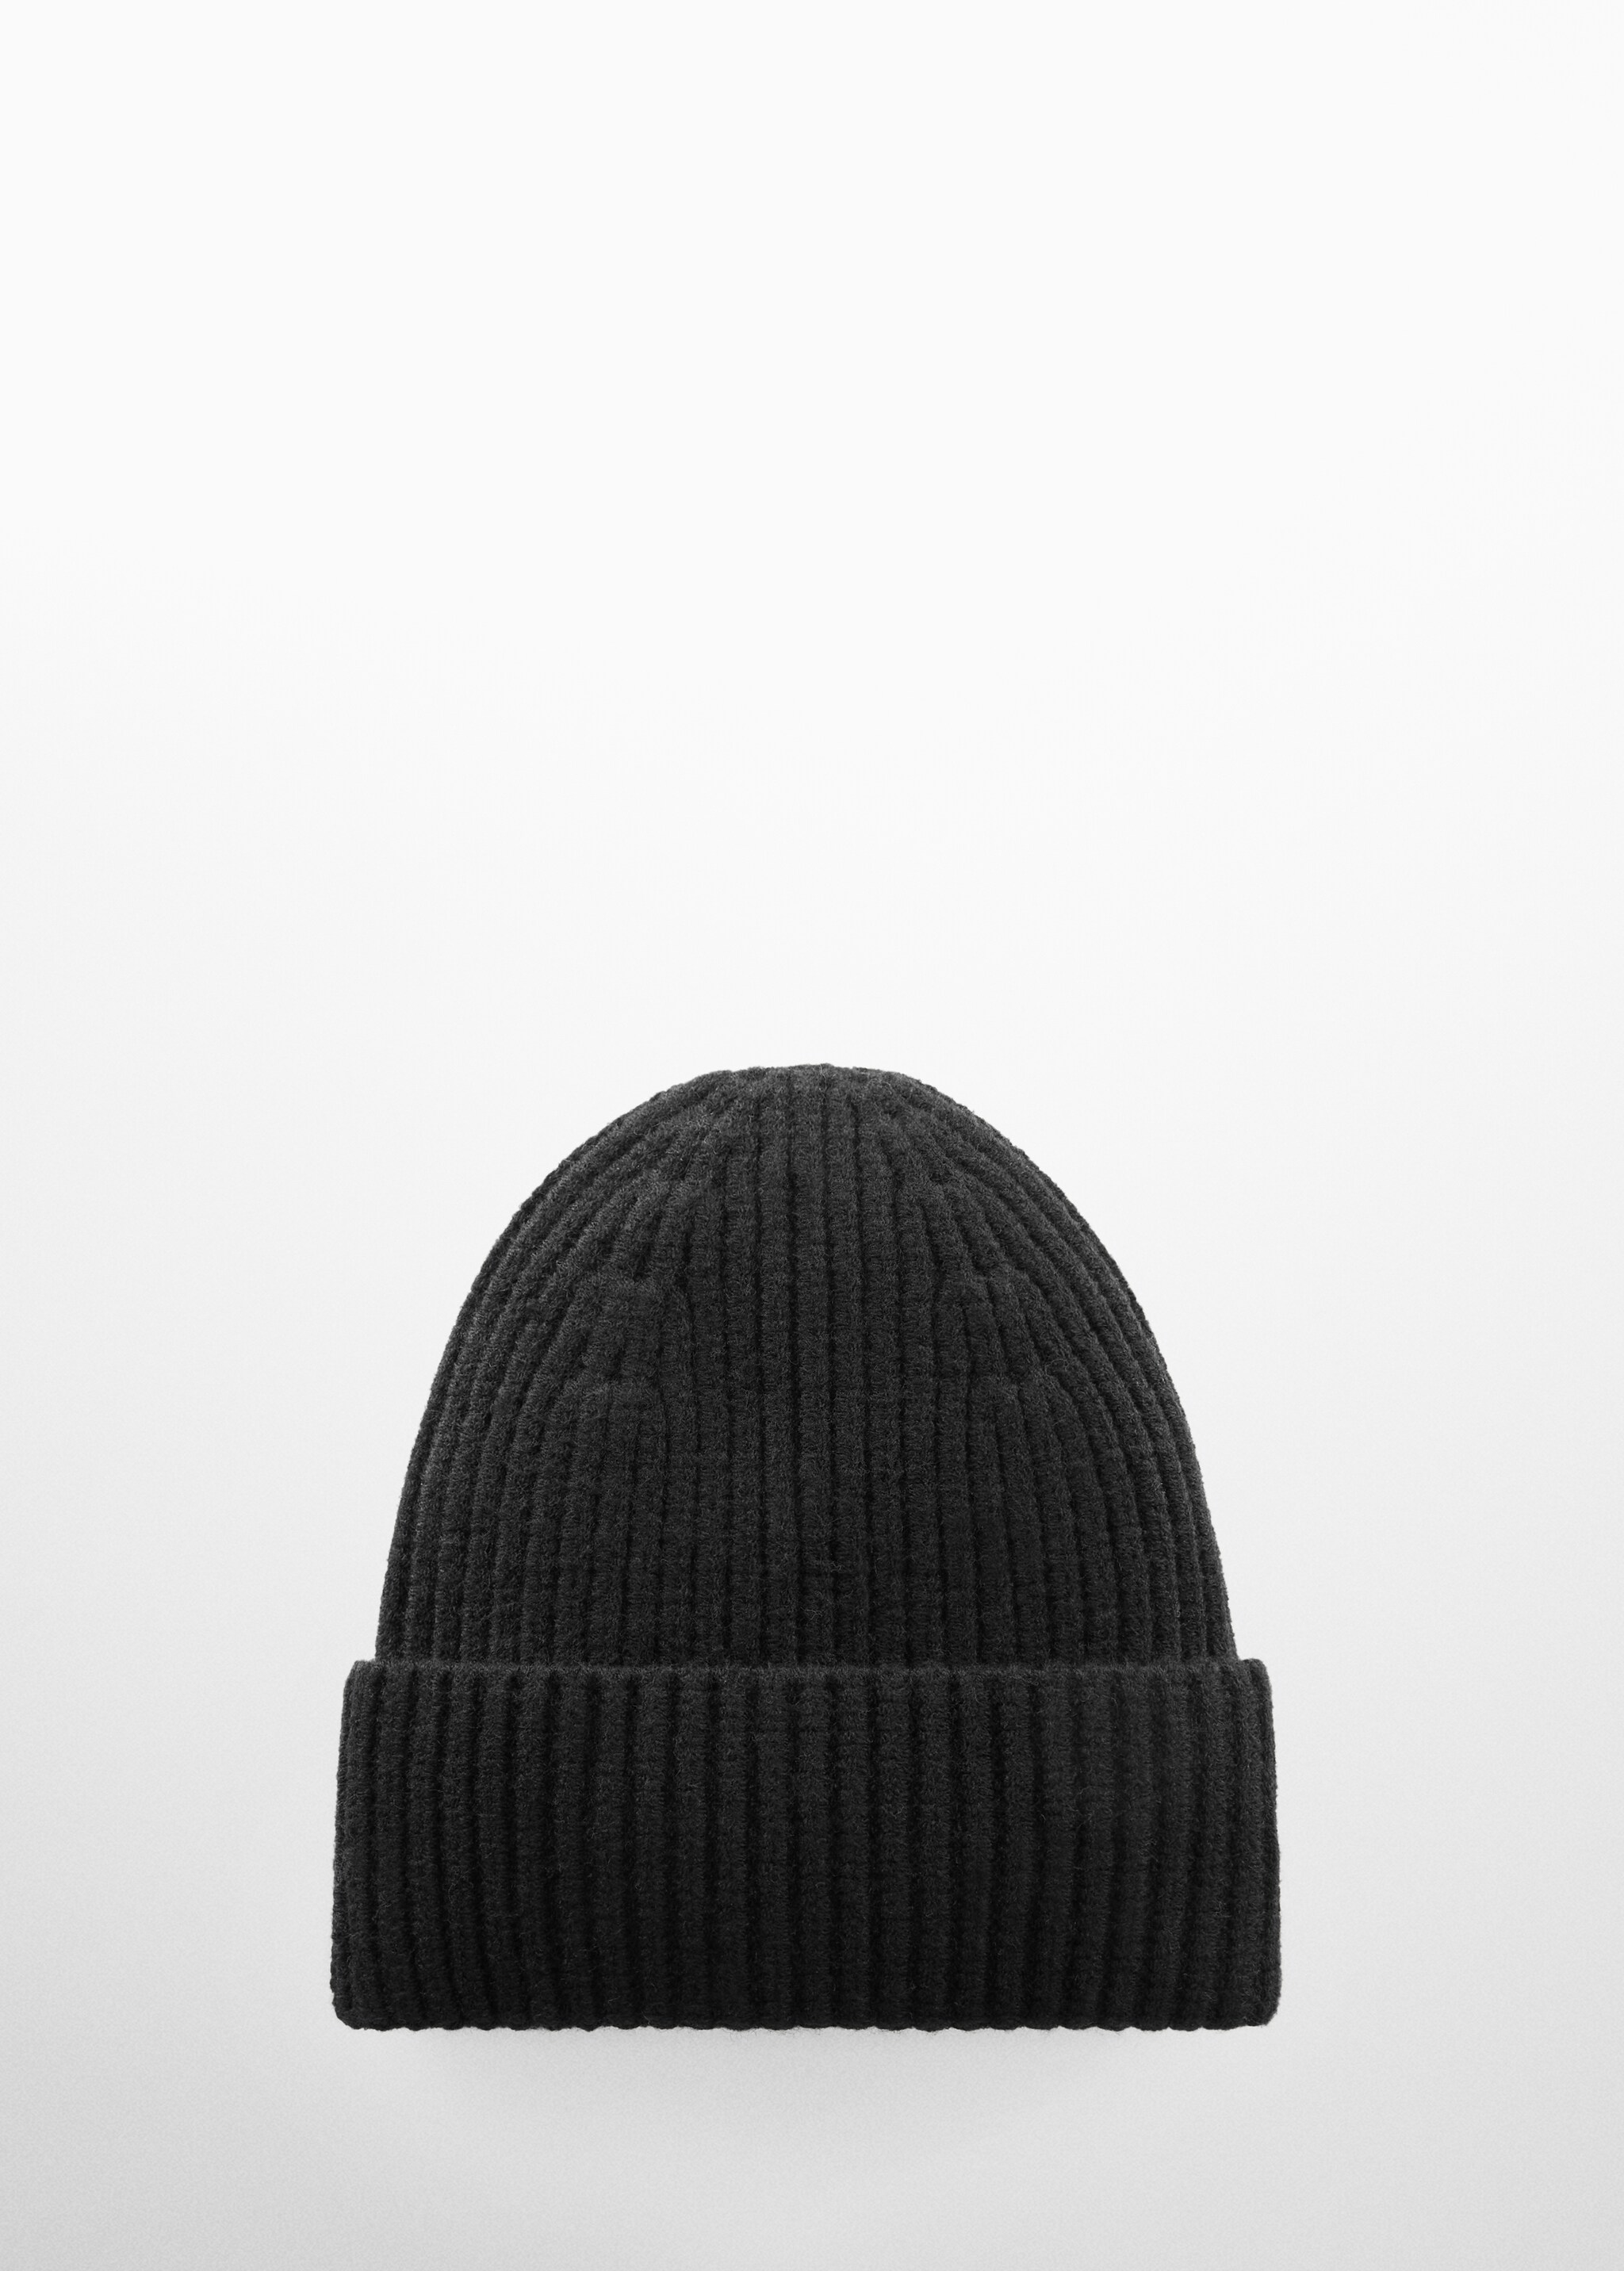 Yün karışımlı triko şapka - Modelsiz ürün